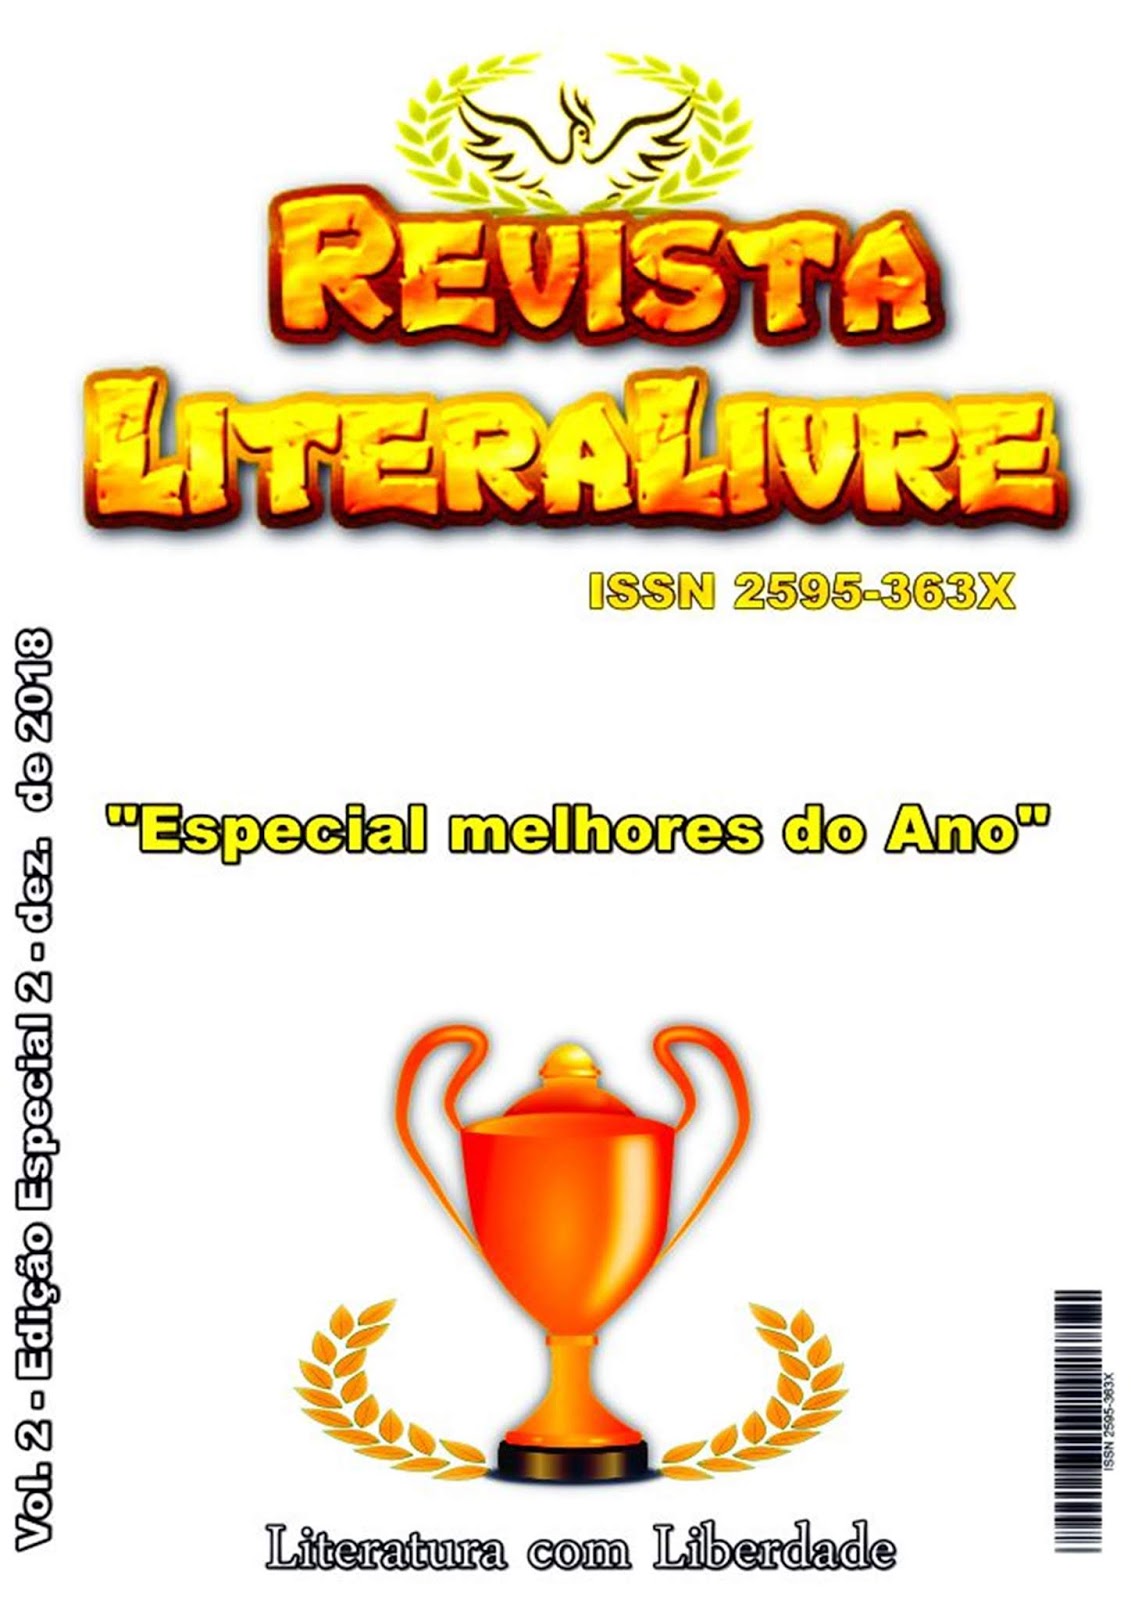 Calaméo - Revista LiteraLivre 30ª Edição